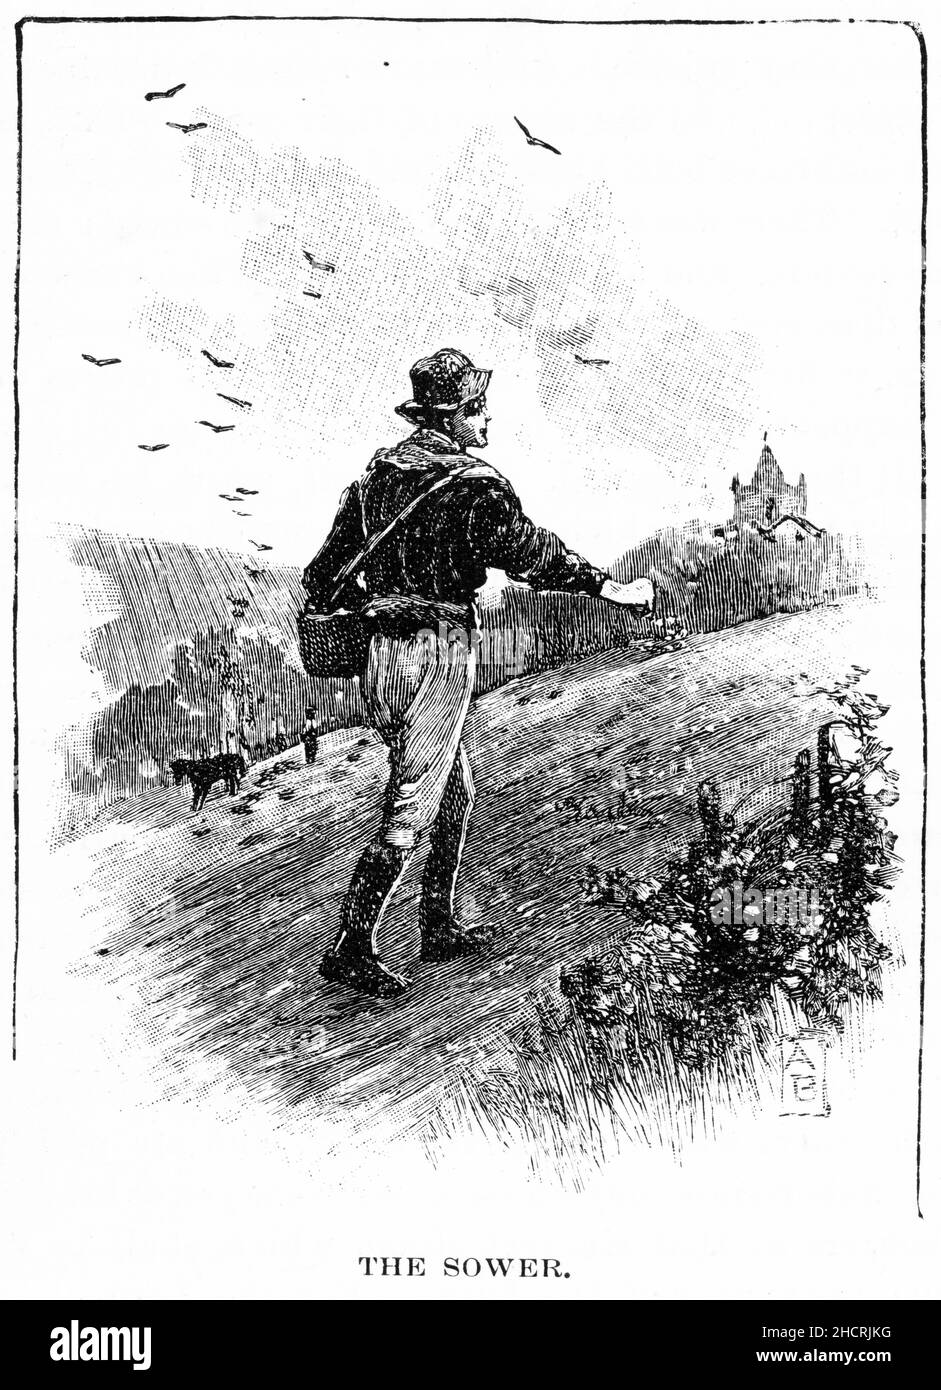 Grabado de un agricultor sembrando semillas a mano para la próxima cosecha, publicado en 1892 Foto de stock